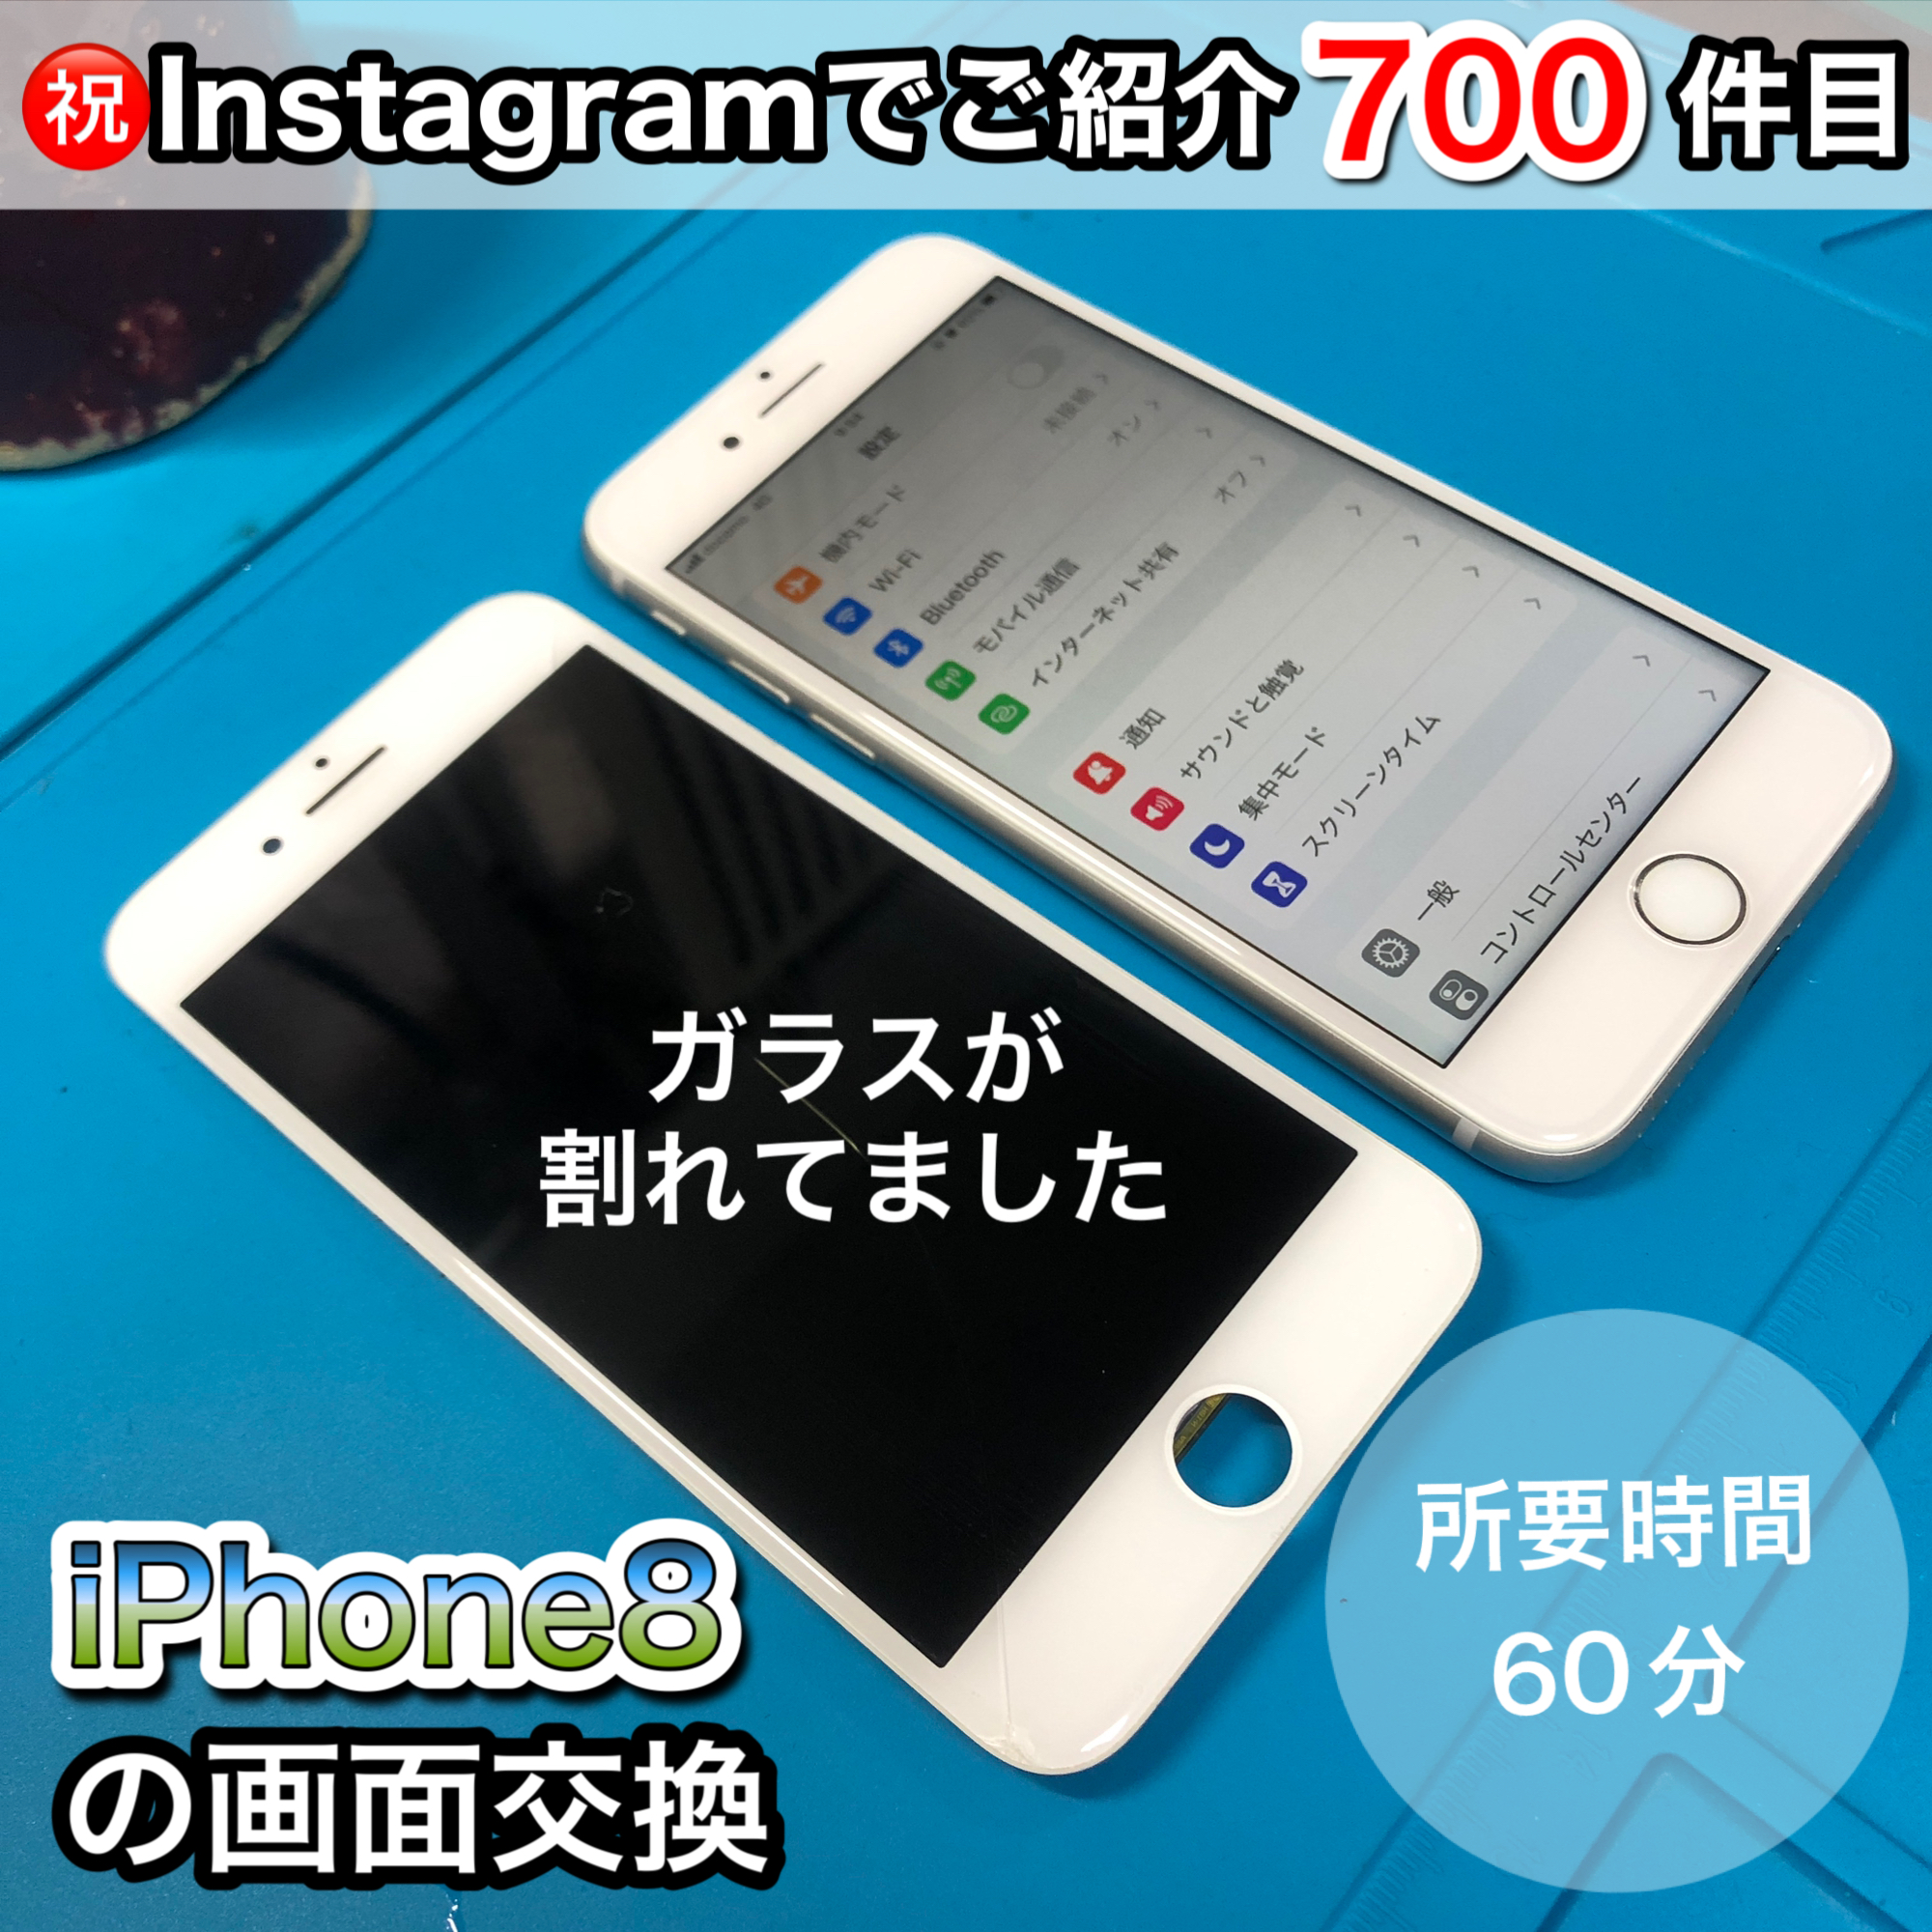 【福岡東公園店】Instagramでの修理事例が700件となりました!！